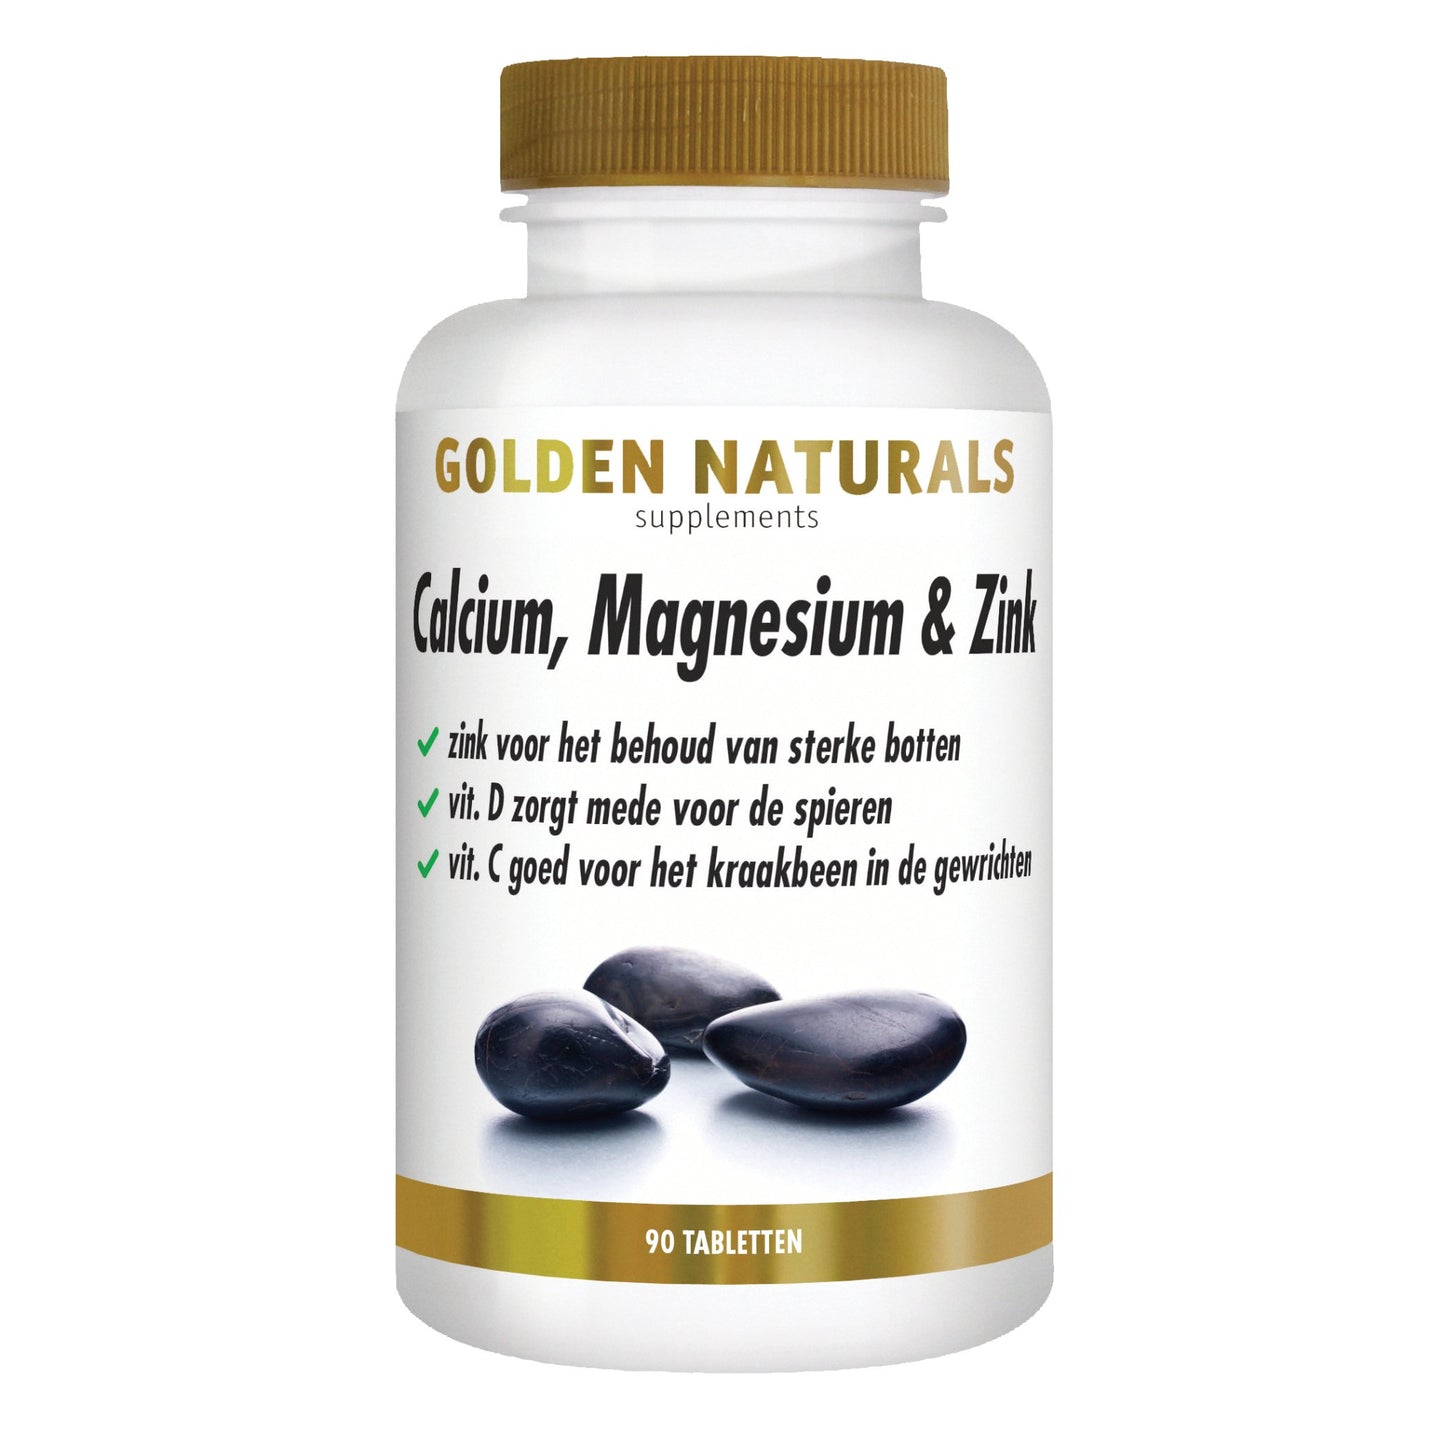 Calcium, Magnesium & Zink - 90 - vegetarische tabletten Supplement Golden Naturals   